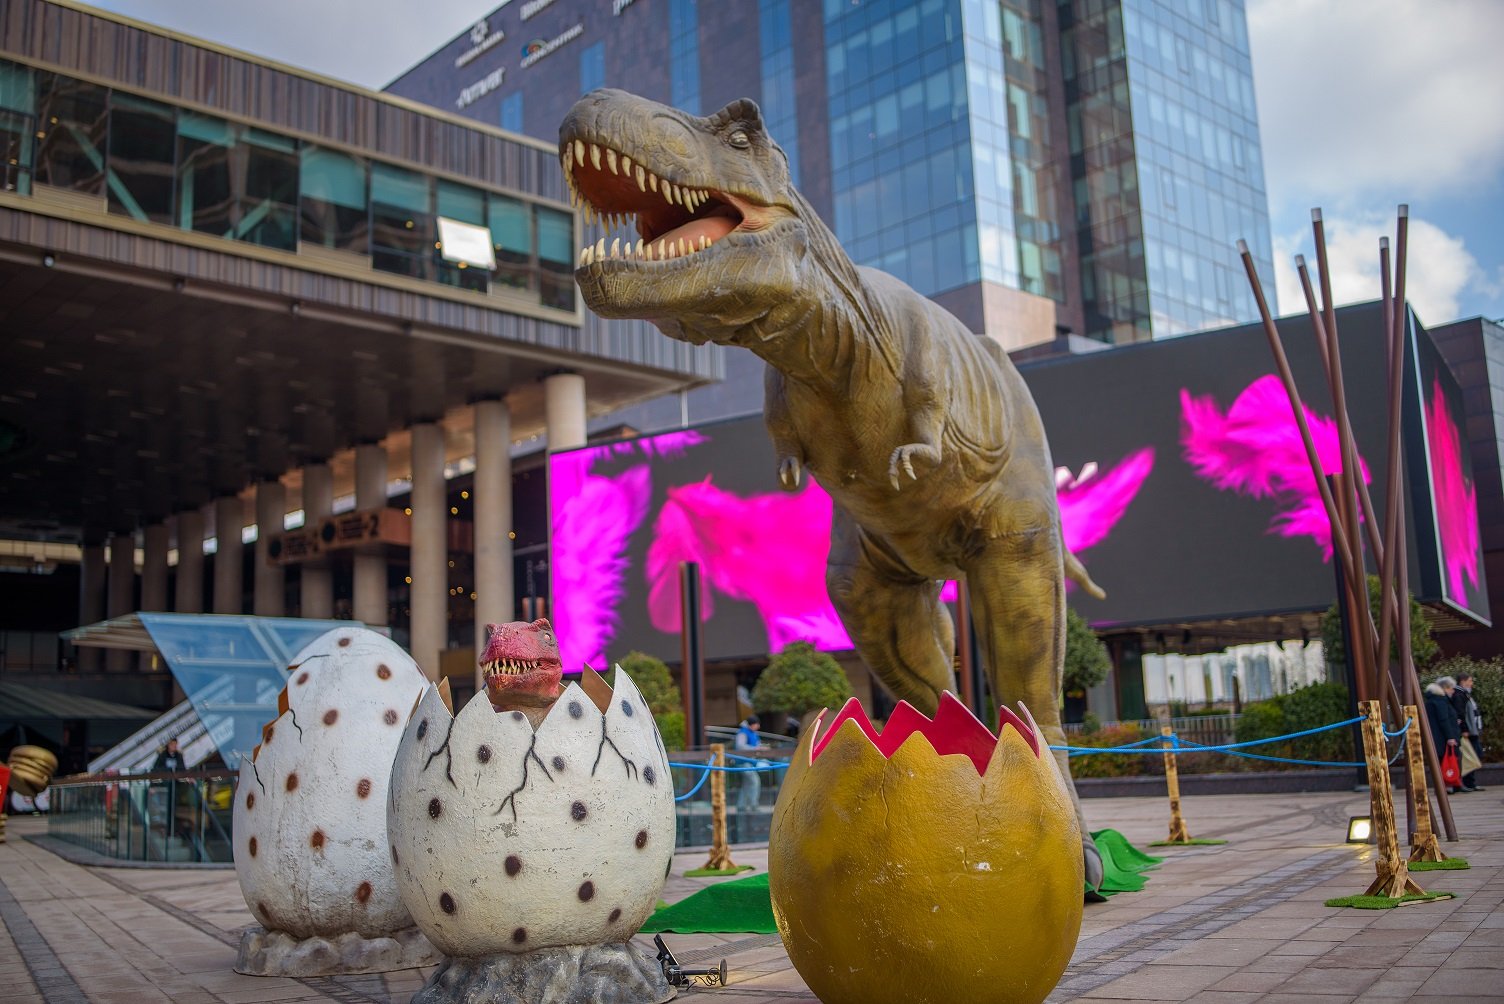  Lumea Dinozaurilor: expoziție cu 26 de dinozauri animatronici de până la 13 metri lungime, la Palas